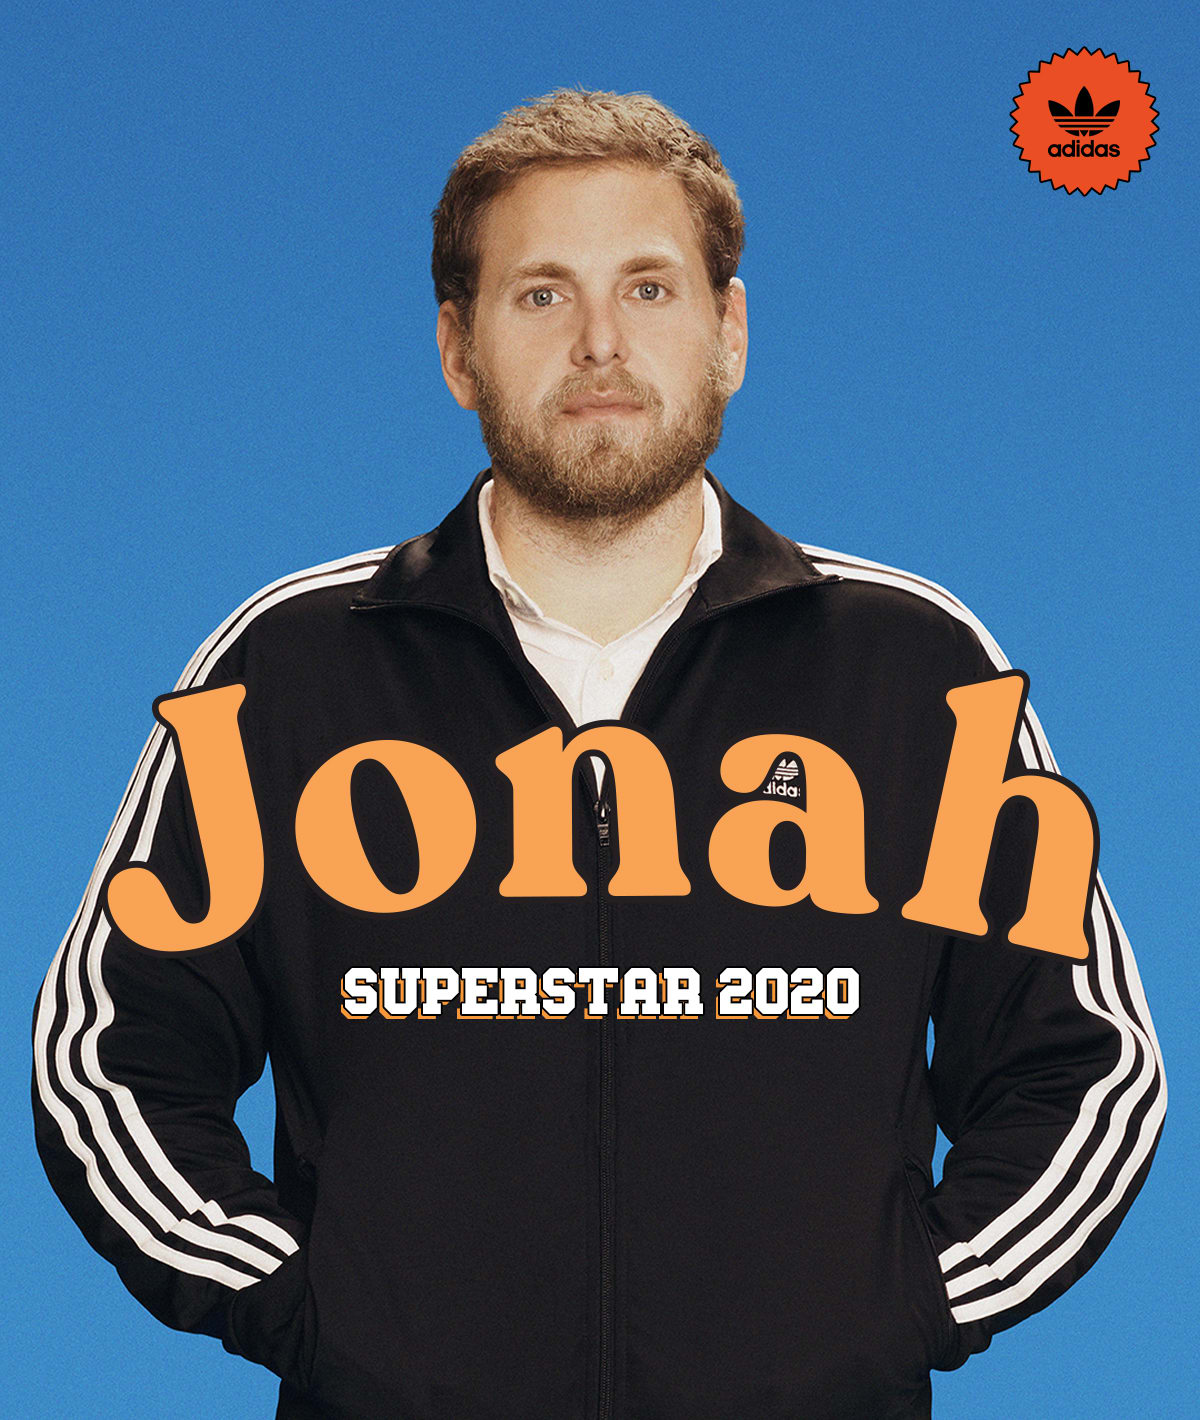 jonah hill superstar